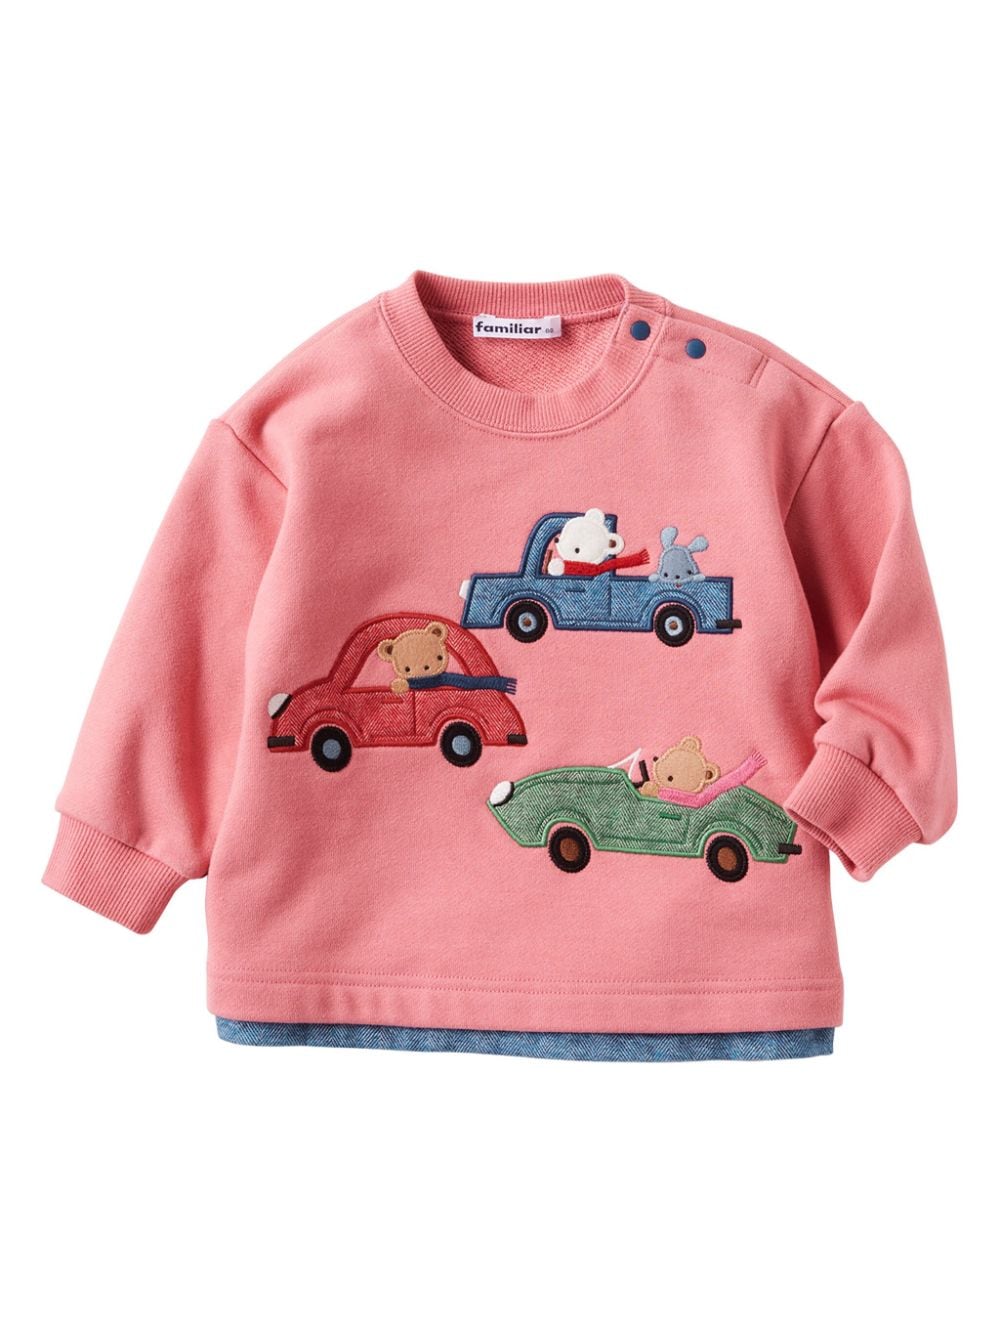 Familiar Kids' Embroidered-design Cotton Sweatshirt In Pink